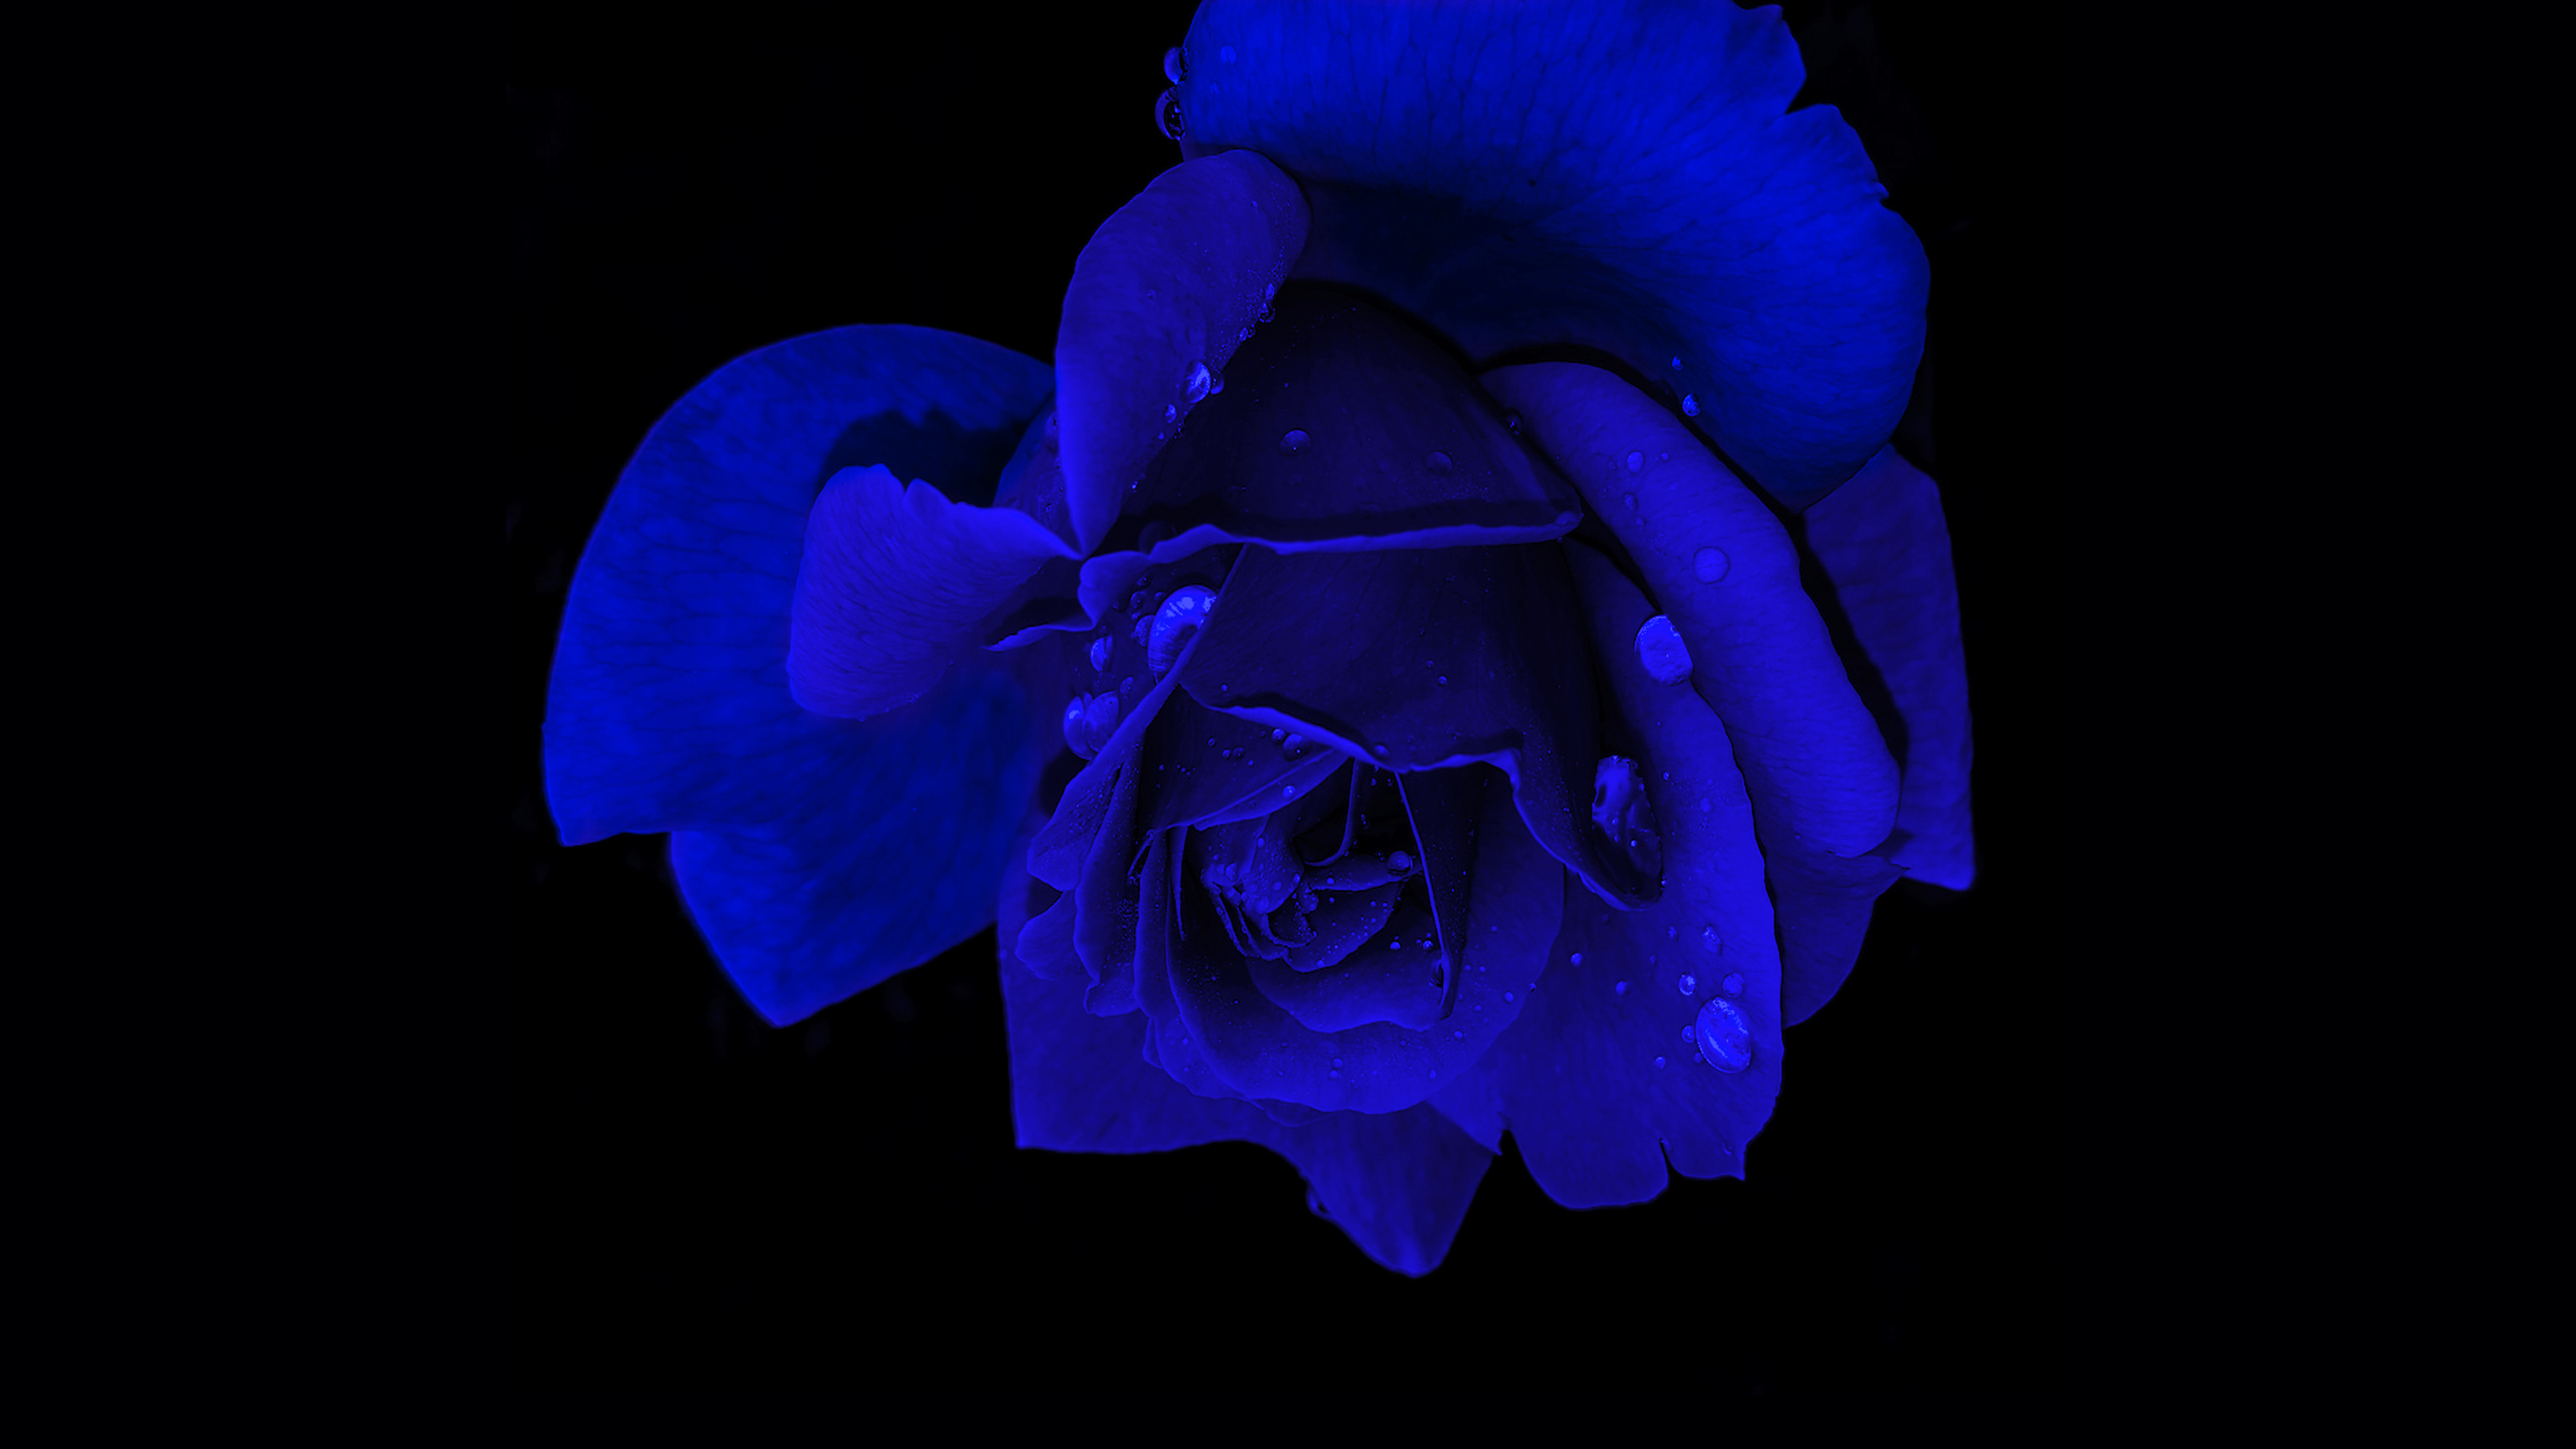 Blue rose Wallpaper 4K, Rose flower, Flowers